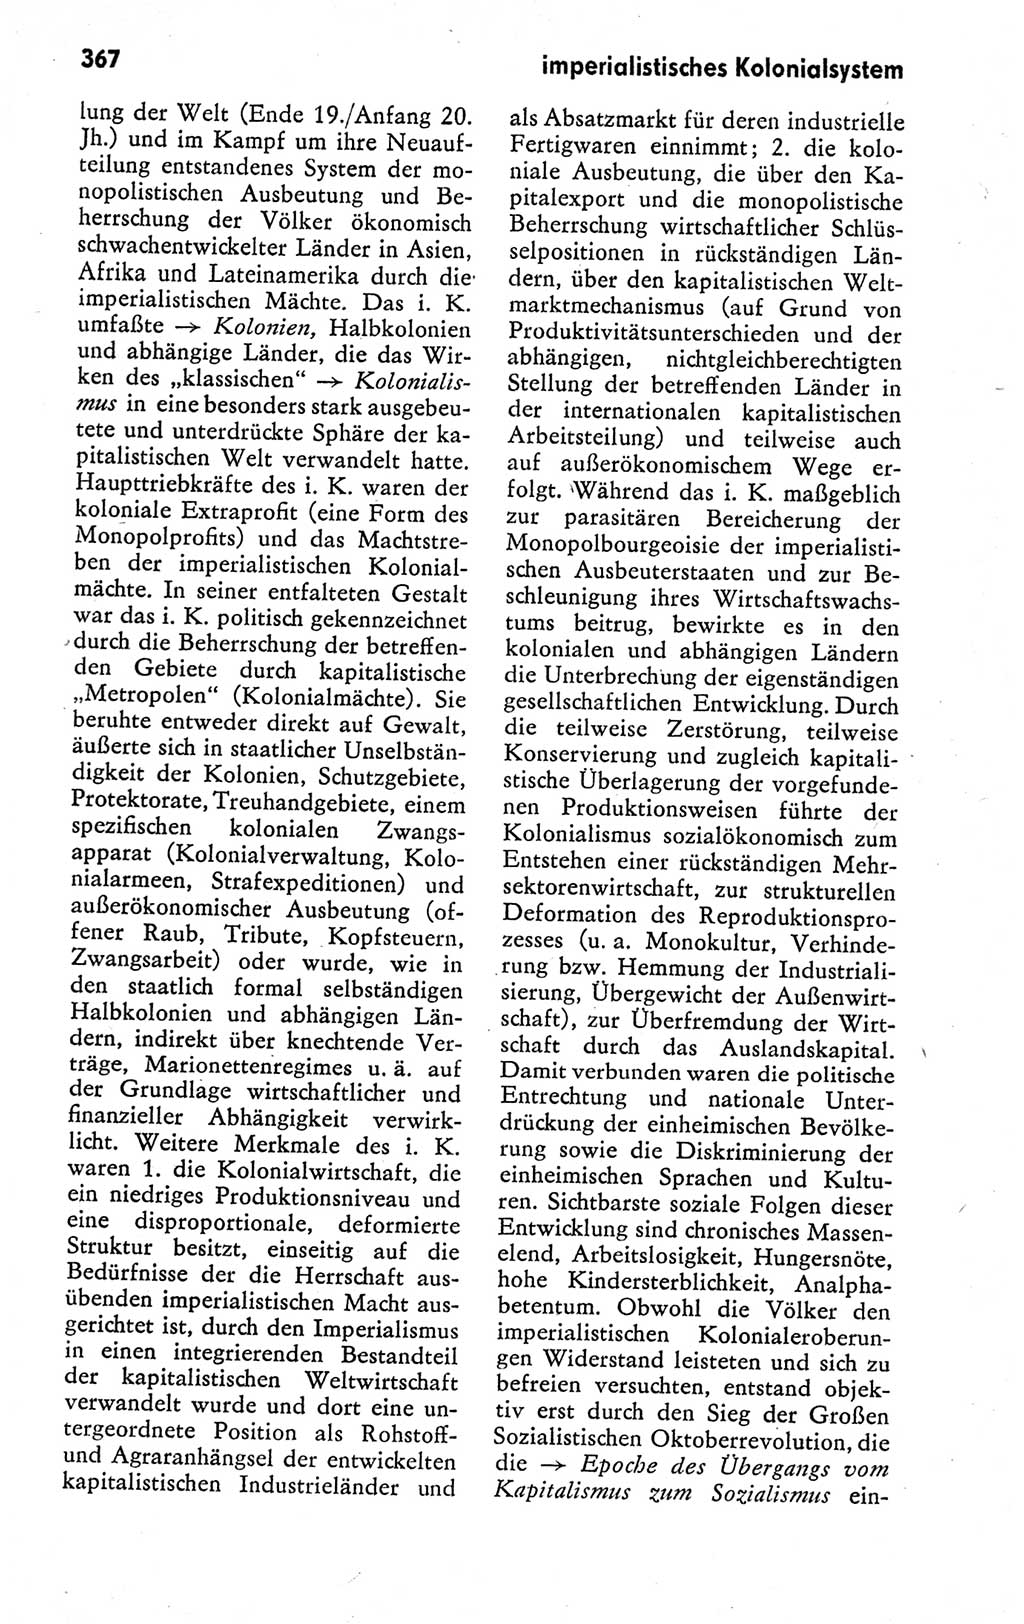 Kleines politisches Wörterbuch [Deutsche Demokratische Republik (DDR)] 1978, Seite 367 (Kl. pol. Wb. DDR 1978, S. 367)